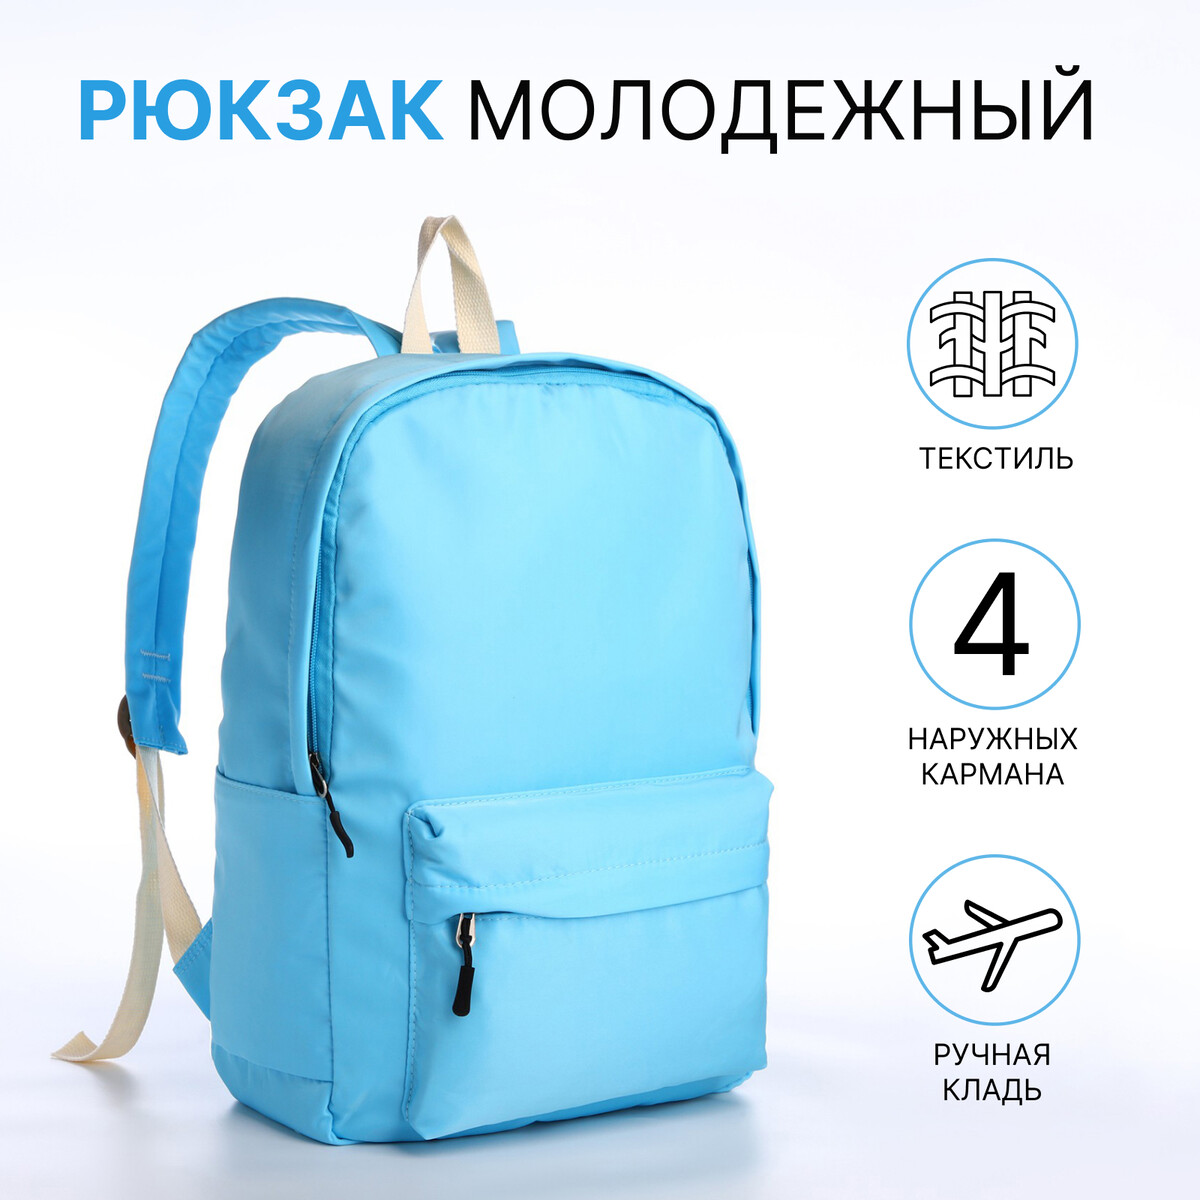 Рюкзак молодежный из текстиля на молнии, 2 кармана, цвет голубой рюкзак wenger next mars 611988 16 деним голубой 26 л